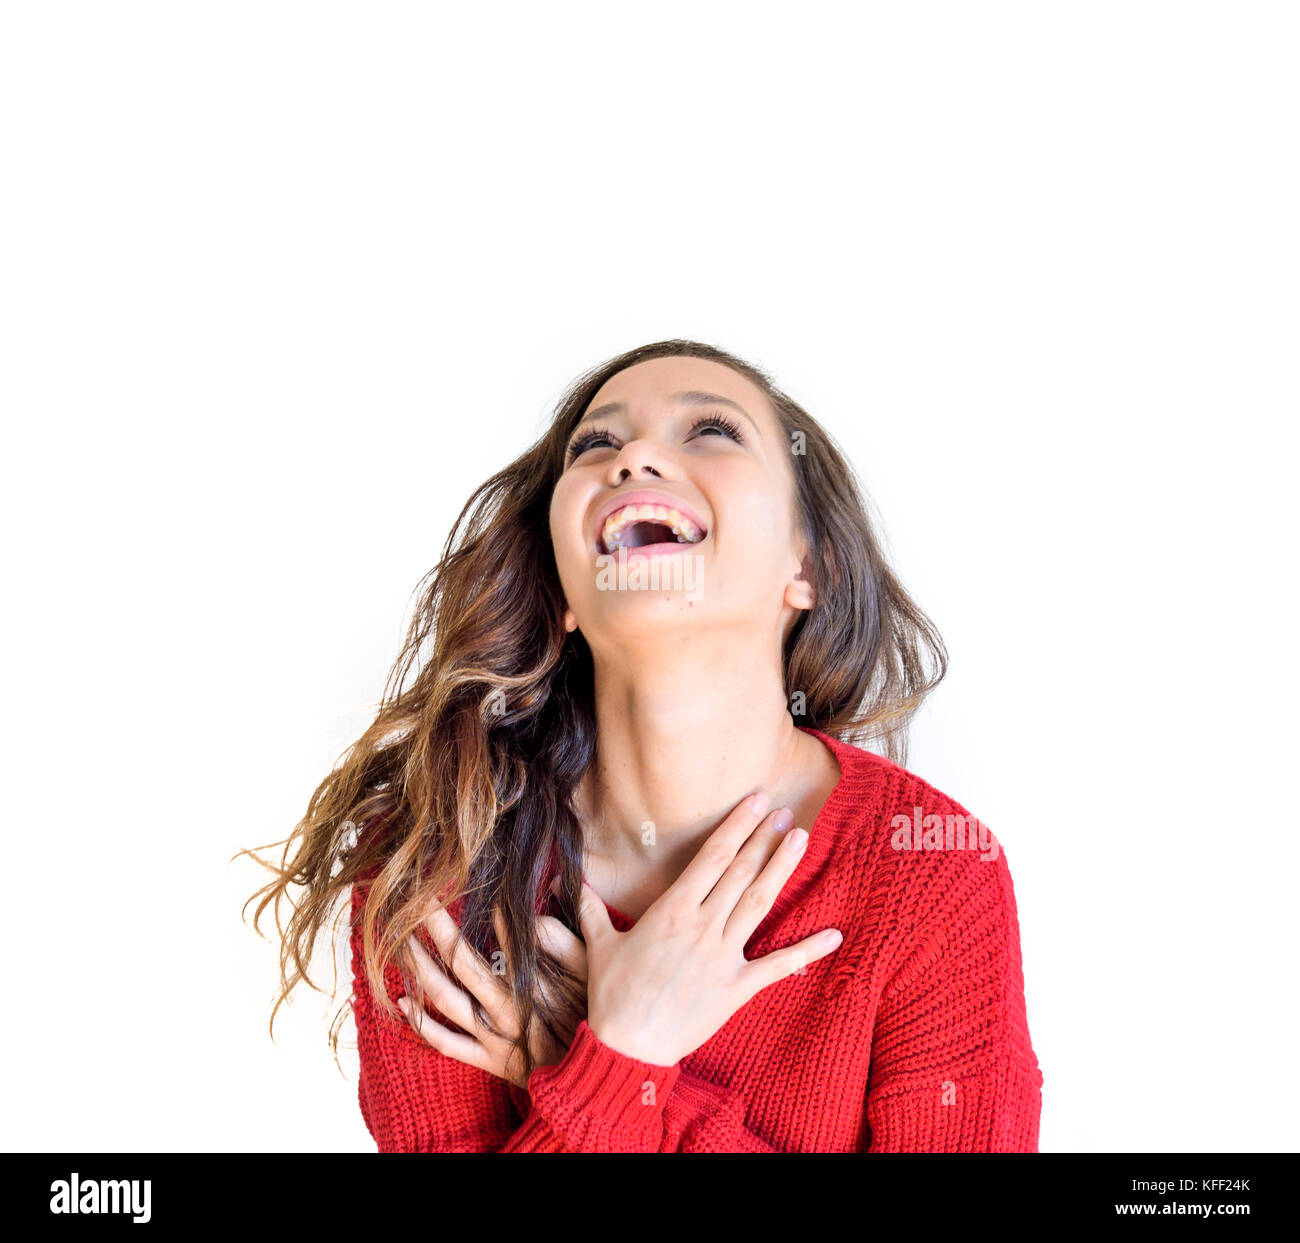 Asiatischen Teenager Frau roten Kleid glücklich Freude emotionalen Ausdruck, die isoliert auf weißem Hintergrund Stockfoto